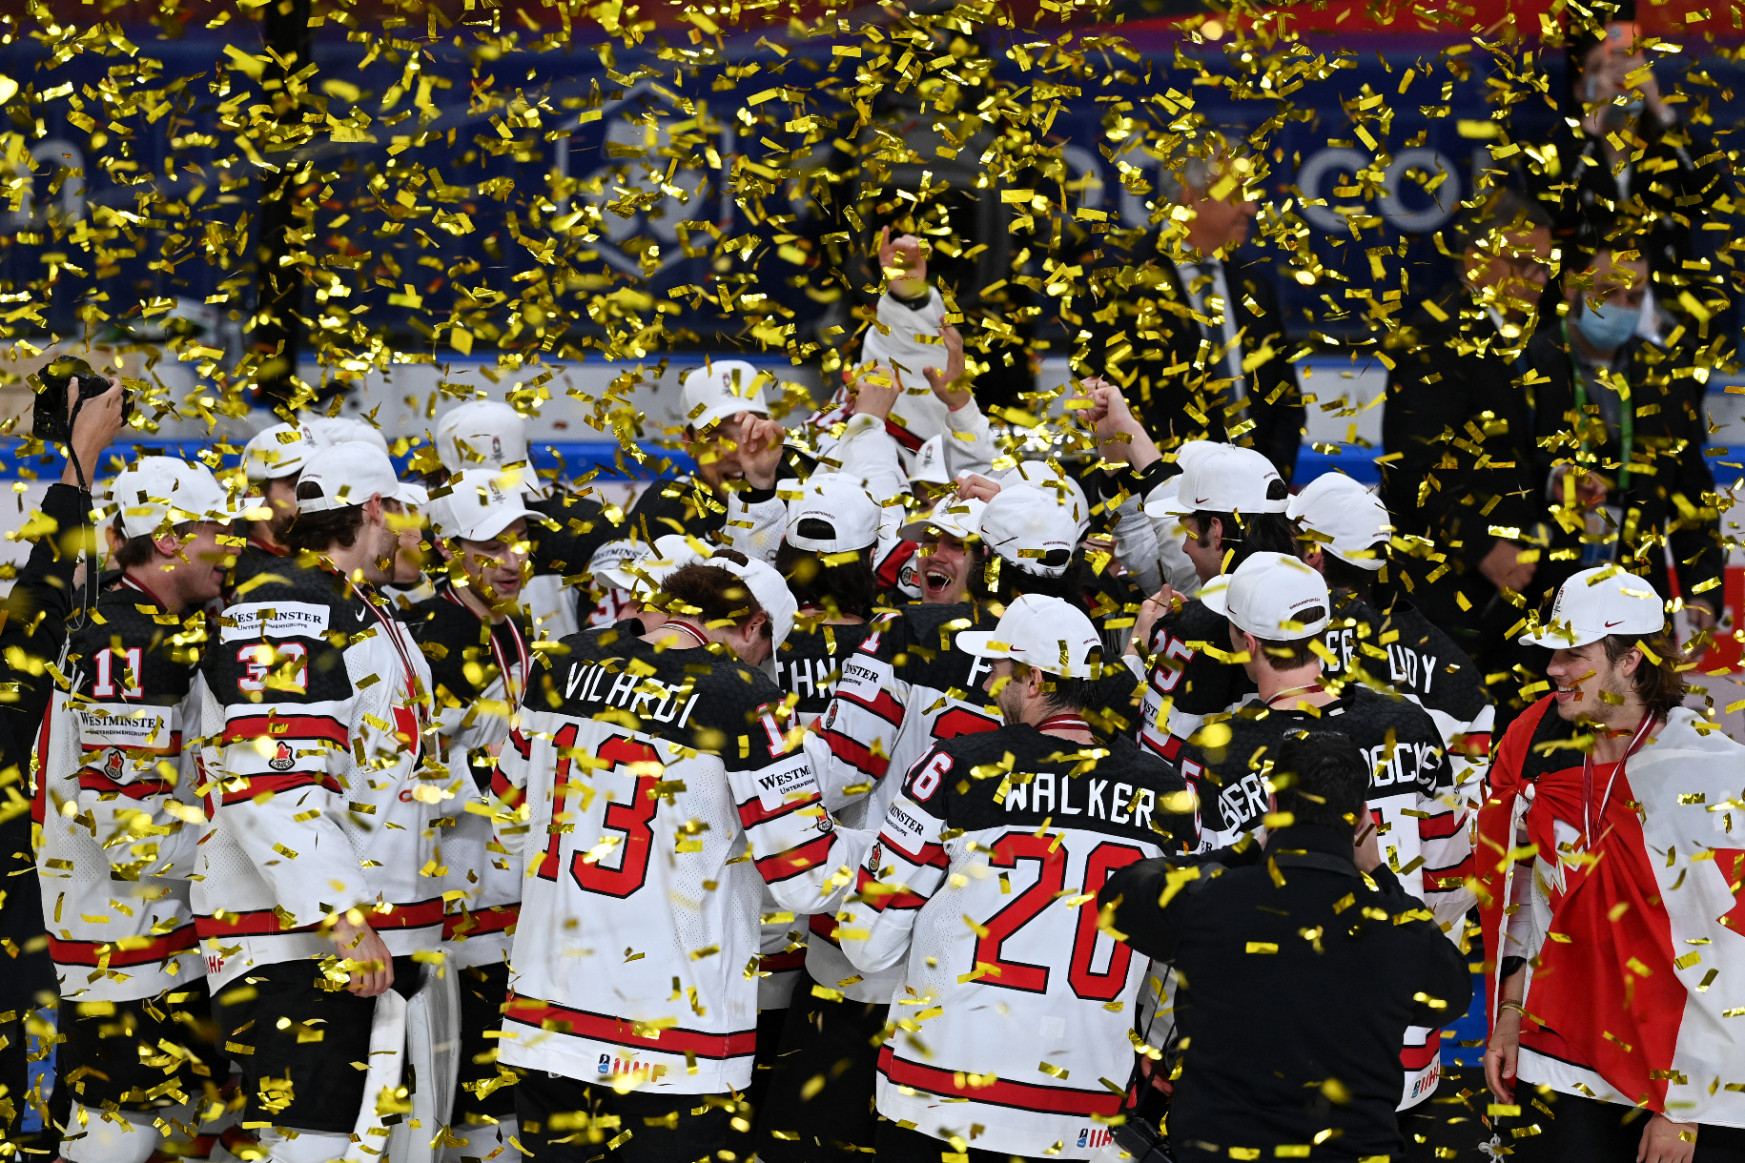 Kanada hosszabbításban győzte le a címvédőket a jégkorong-vb döntőjében